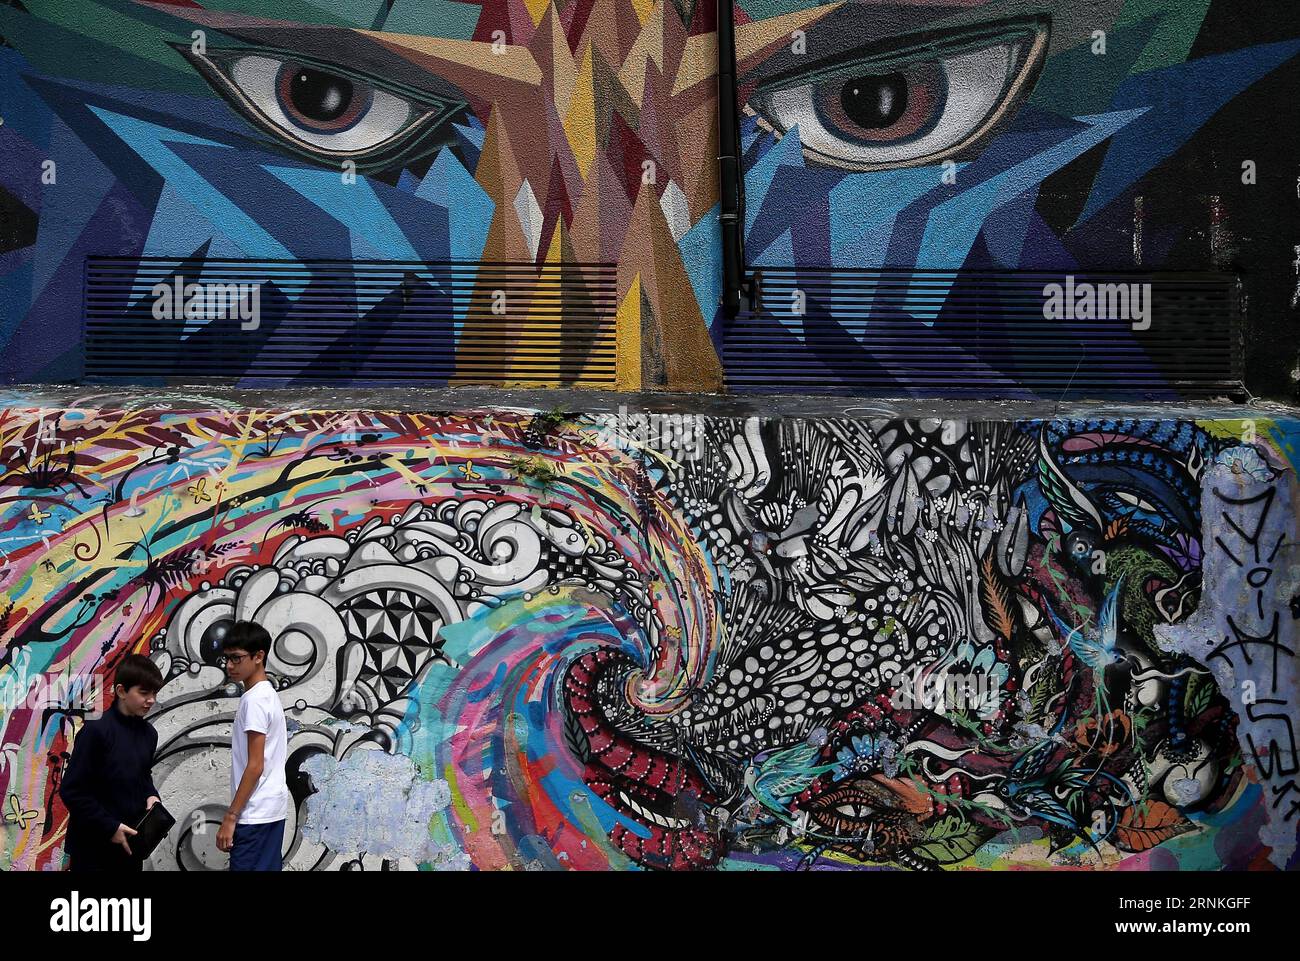 (170330) -- SAO PAULO, 30 mars 2017 -- deux garçons se tiennent devant un mur avec des graffitis à la Batman s Alley à Sao Paulo, Brésil, le 29 mars 2017. Batman s Alley est une destination touristique populaire en raison de la forte concentration de graffitis qui bordent les rues.) (Sxk) BRÉSIL-SAO PAULO-GRAFFITI LixMing PUBLICATIONxNOTxINxCHN Sao Paulo Mars 30 2017 deux garçons debout devant un mur avec graffiti À la Batman S Alley à Sao Paulo Brésil Mars 29 2017 Batman S Alley EST une destination touristique populaire en raison de la forte concentration de Graffiti Thatcher Line les rues sxk Brésil Banque D'Images